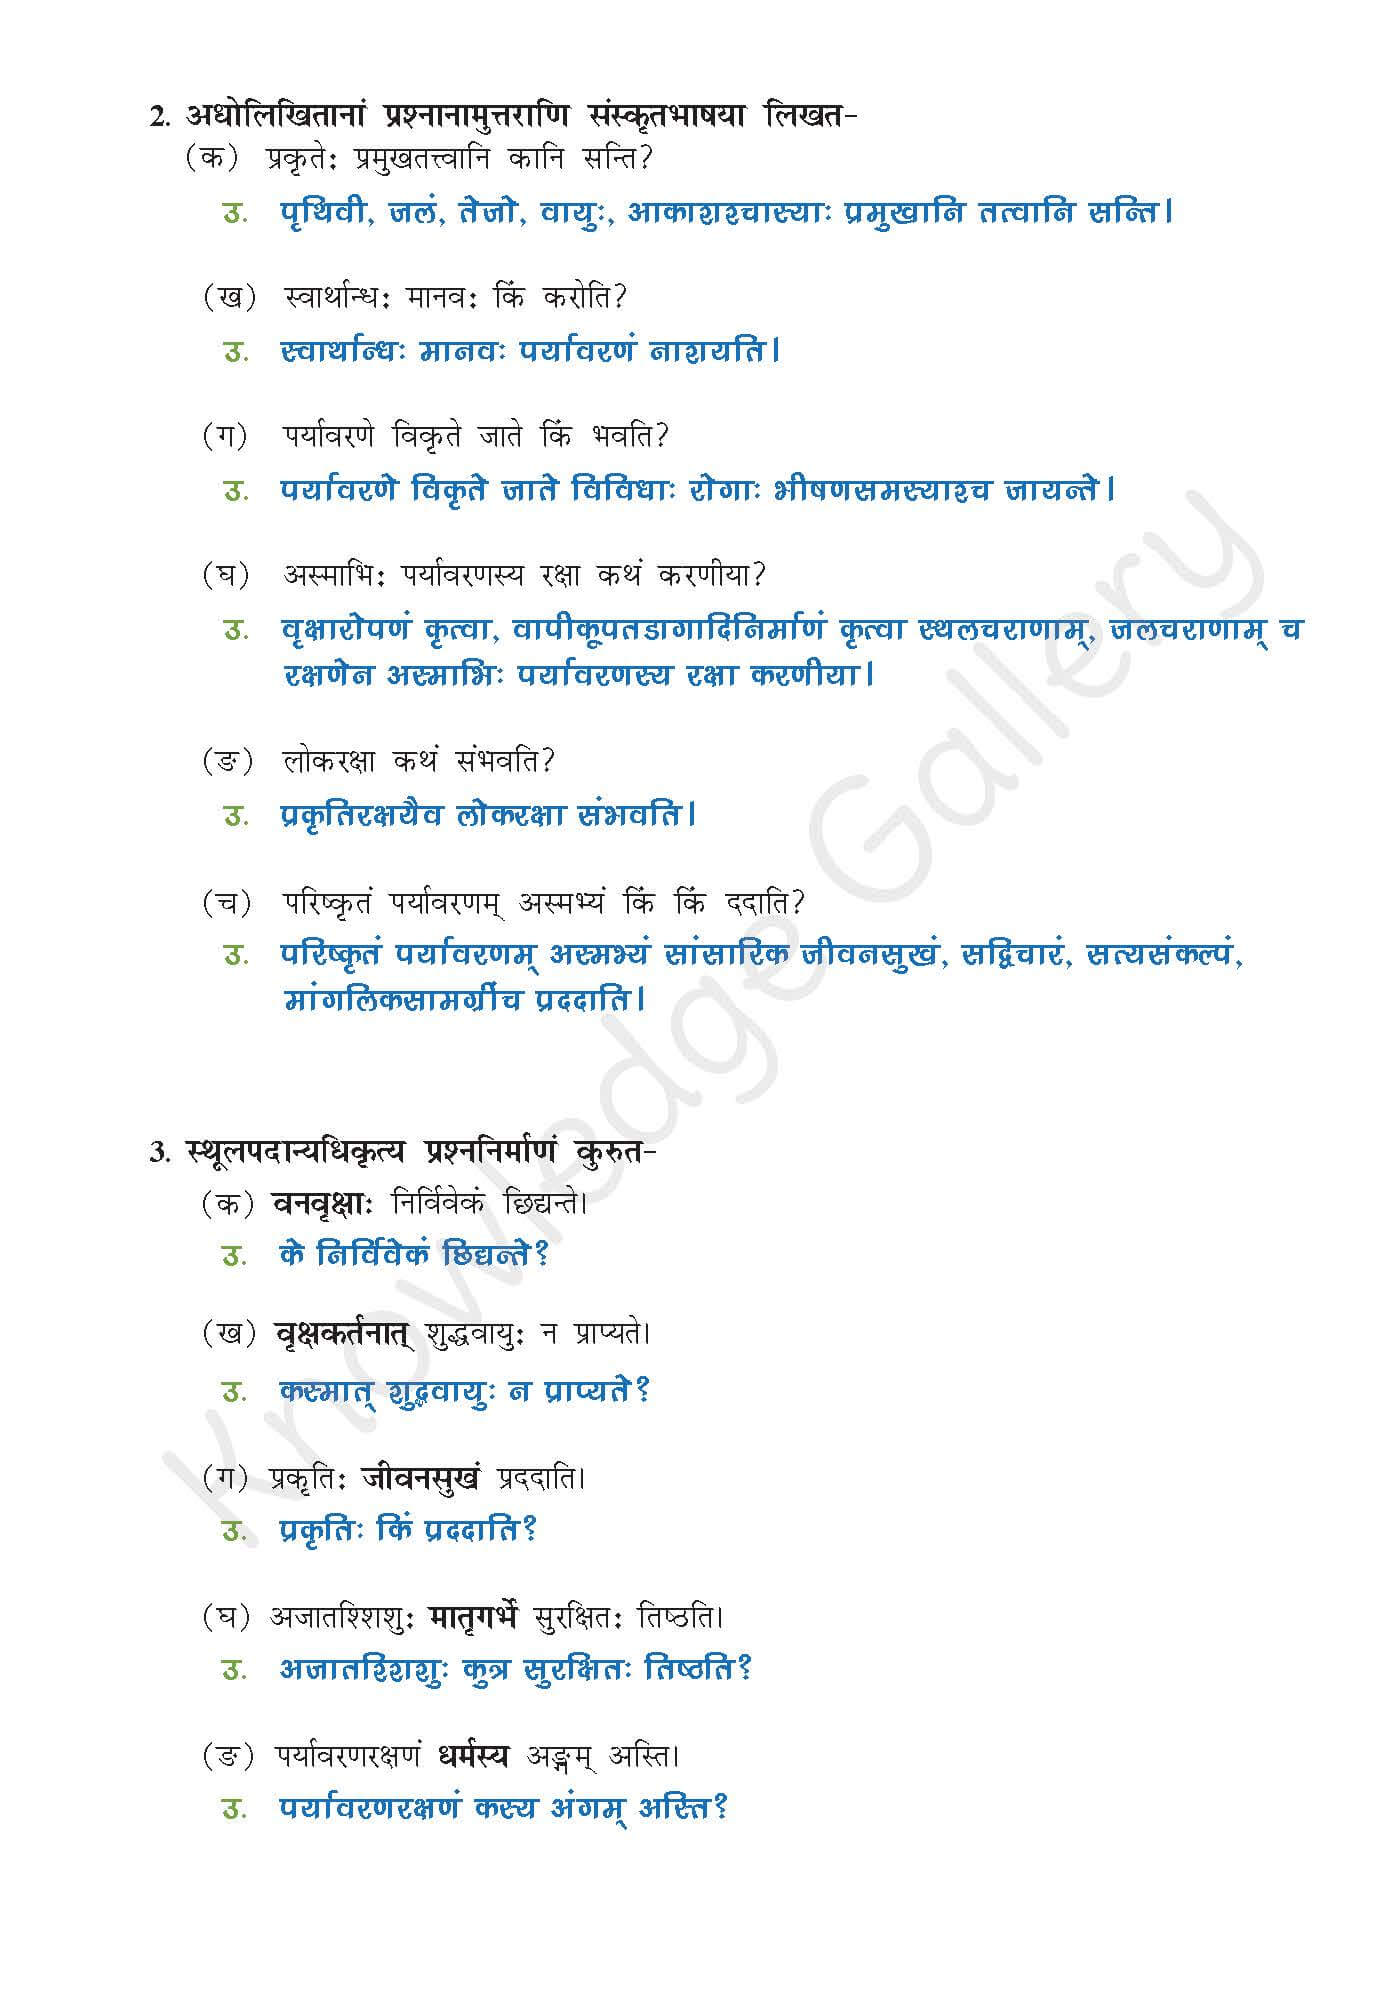 NCERT Solution For Class 9 Sanskrit Chapter 9 part 5